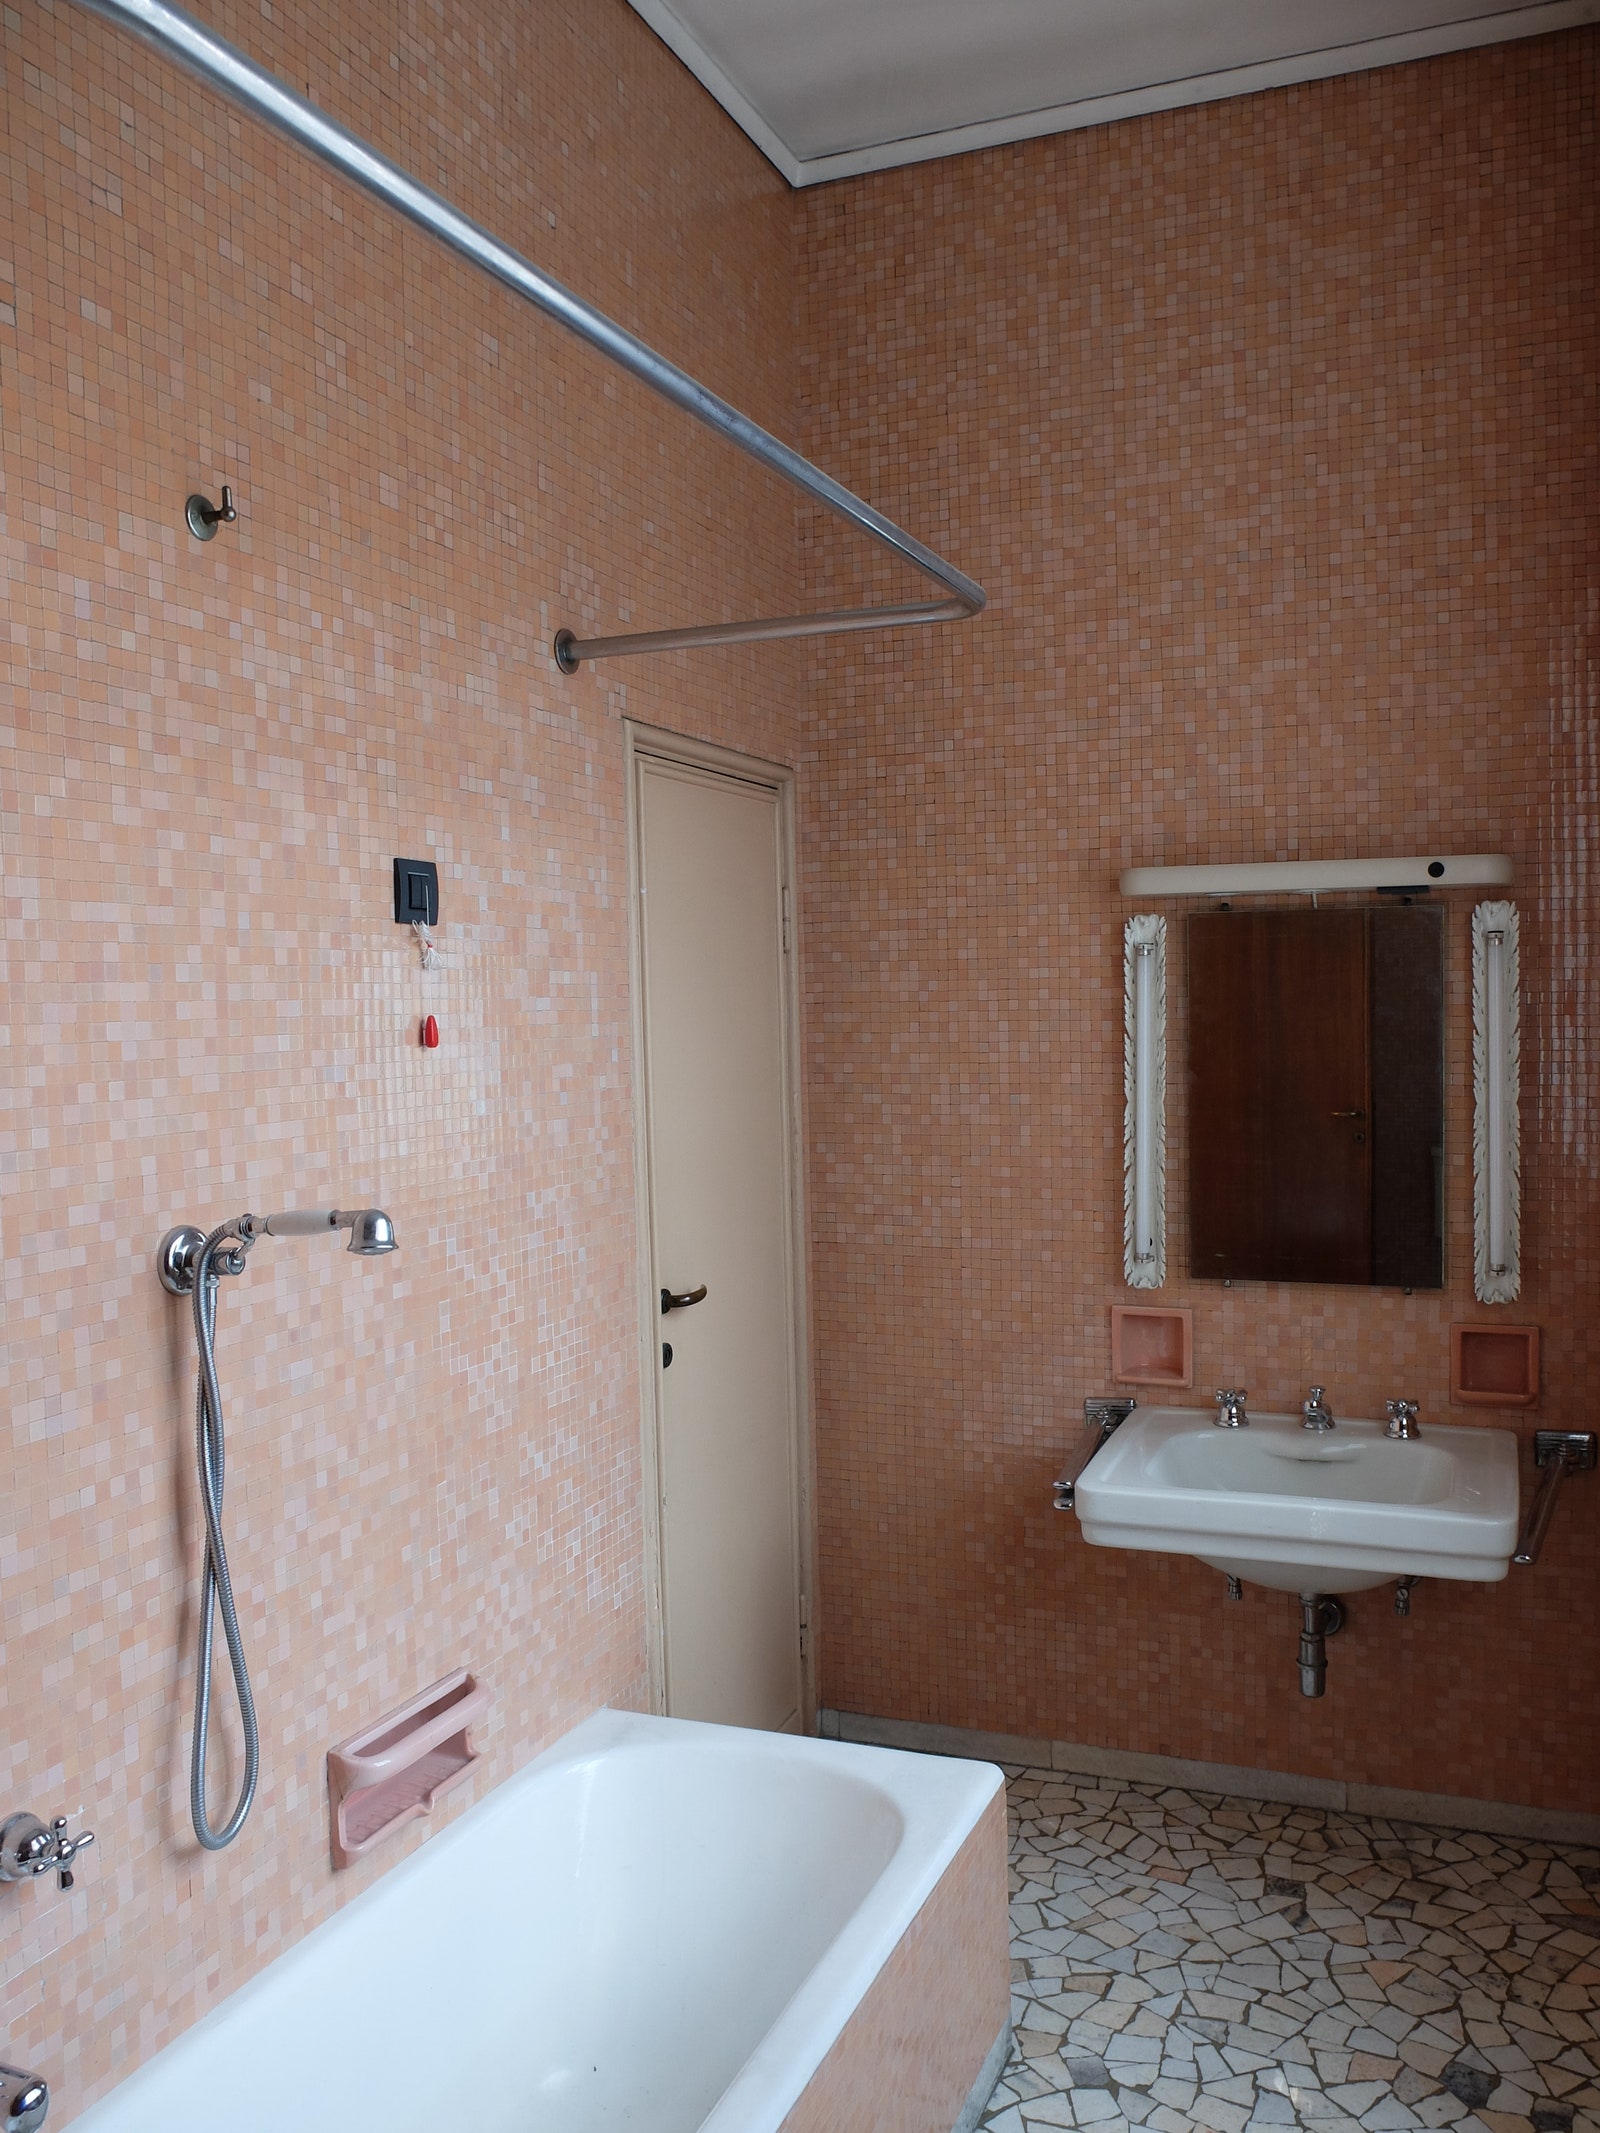 A tiled bathroom with crazy mosaic floor